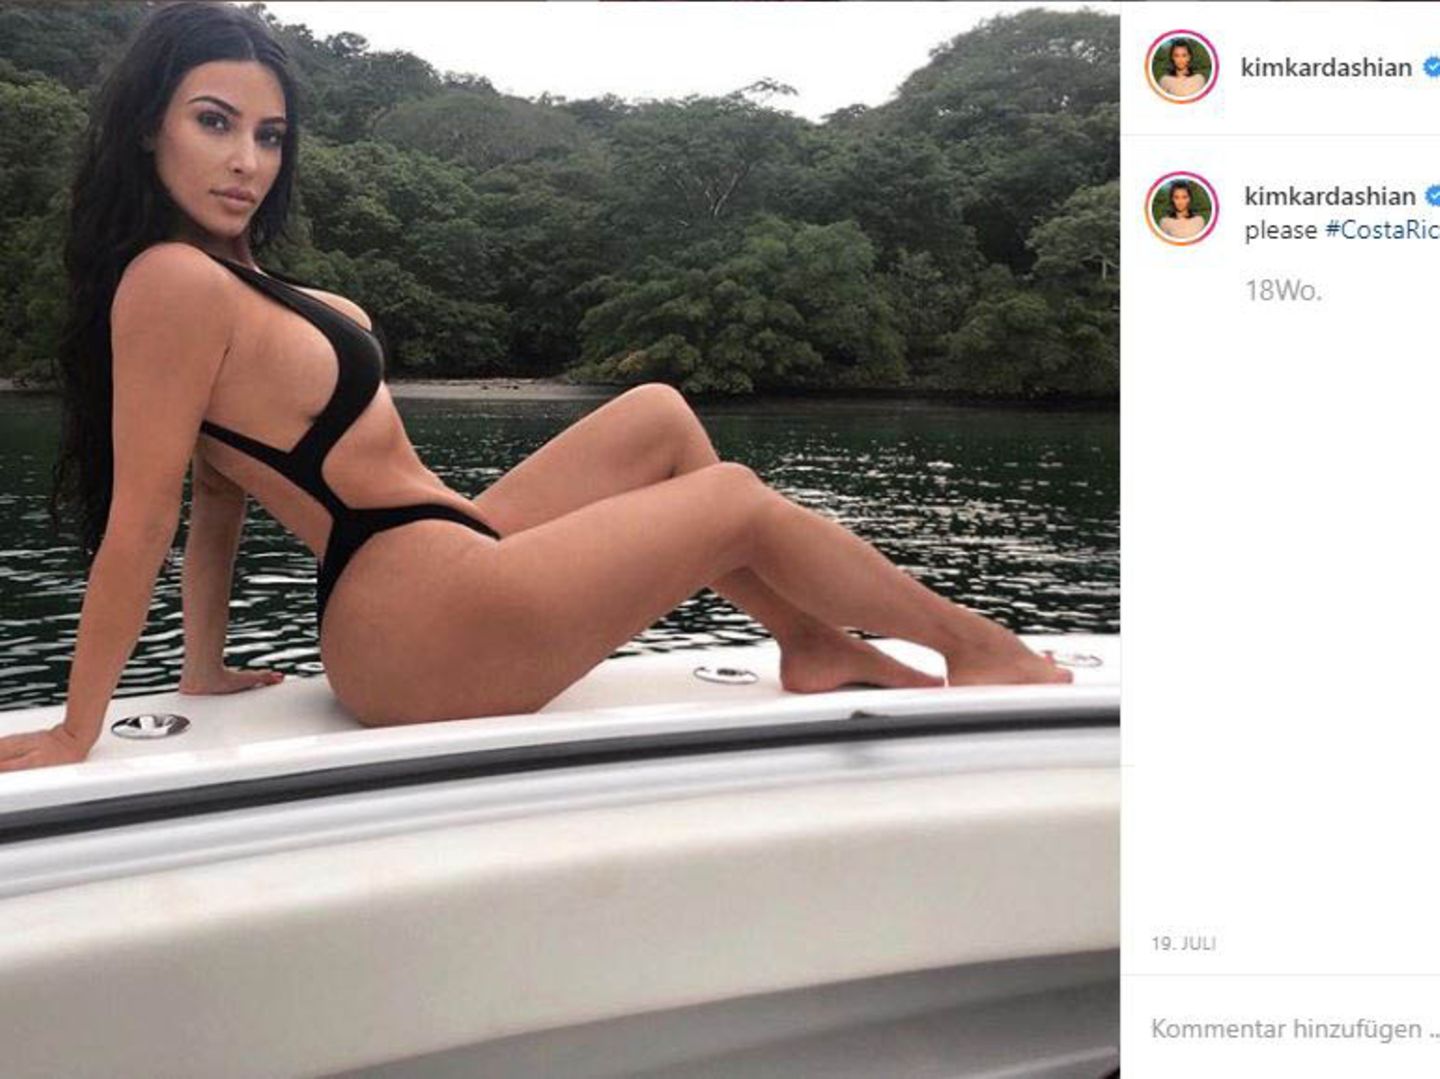 Kim Kardashian will in Zukunft keine Bikini-Bilder mehr posten | STERN.de